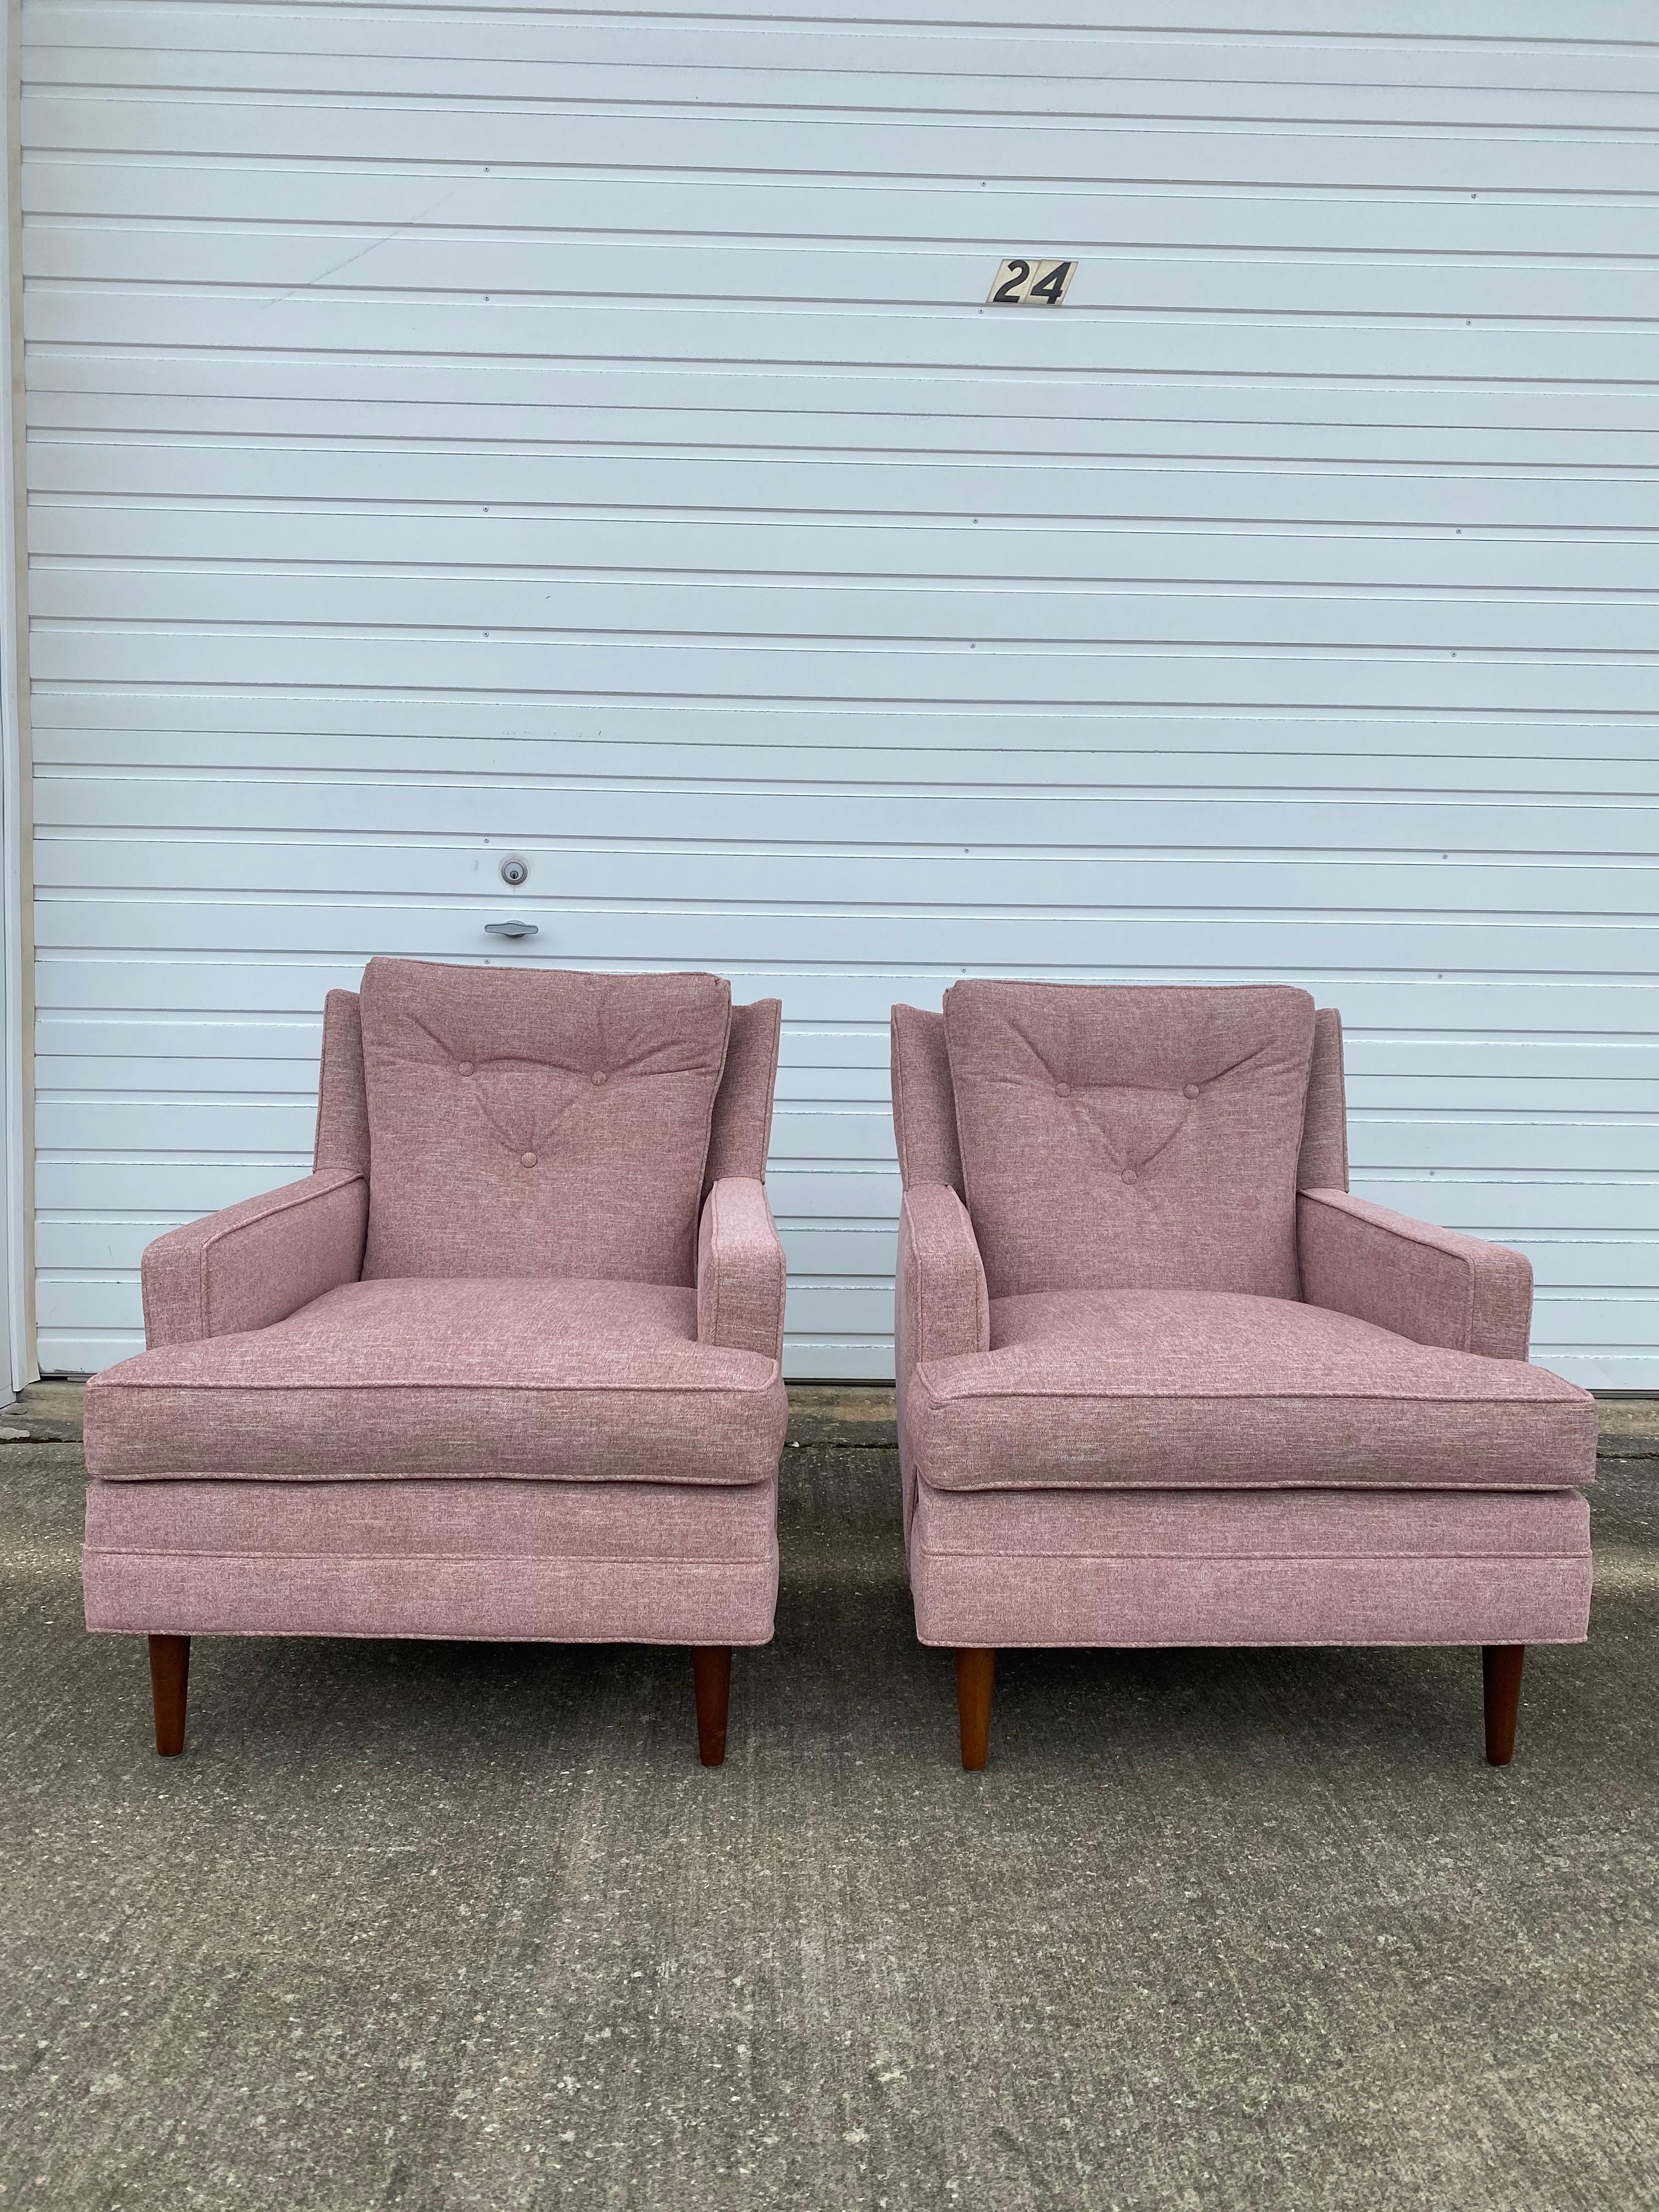 Paar neu gepolsterte 1960er Flair Club Stühle von Bernhardt. Diese Stühle wurden mit einem Crypton 49 Mauve von Great Lakes Fabrics komplett neu gepolstert und mit 50.000 Doppelschleifen versehen. Es handelt sich dabei um einen leistungsstarken